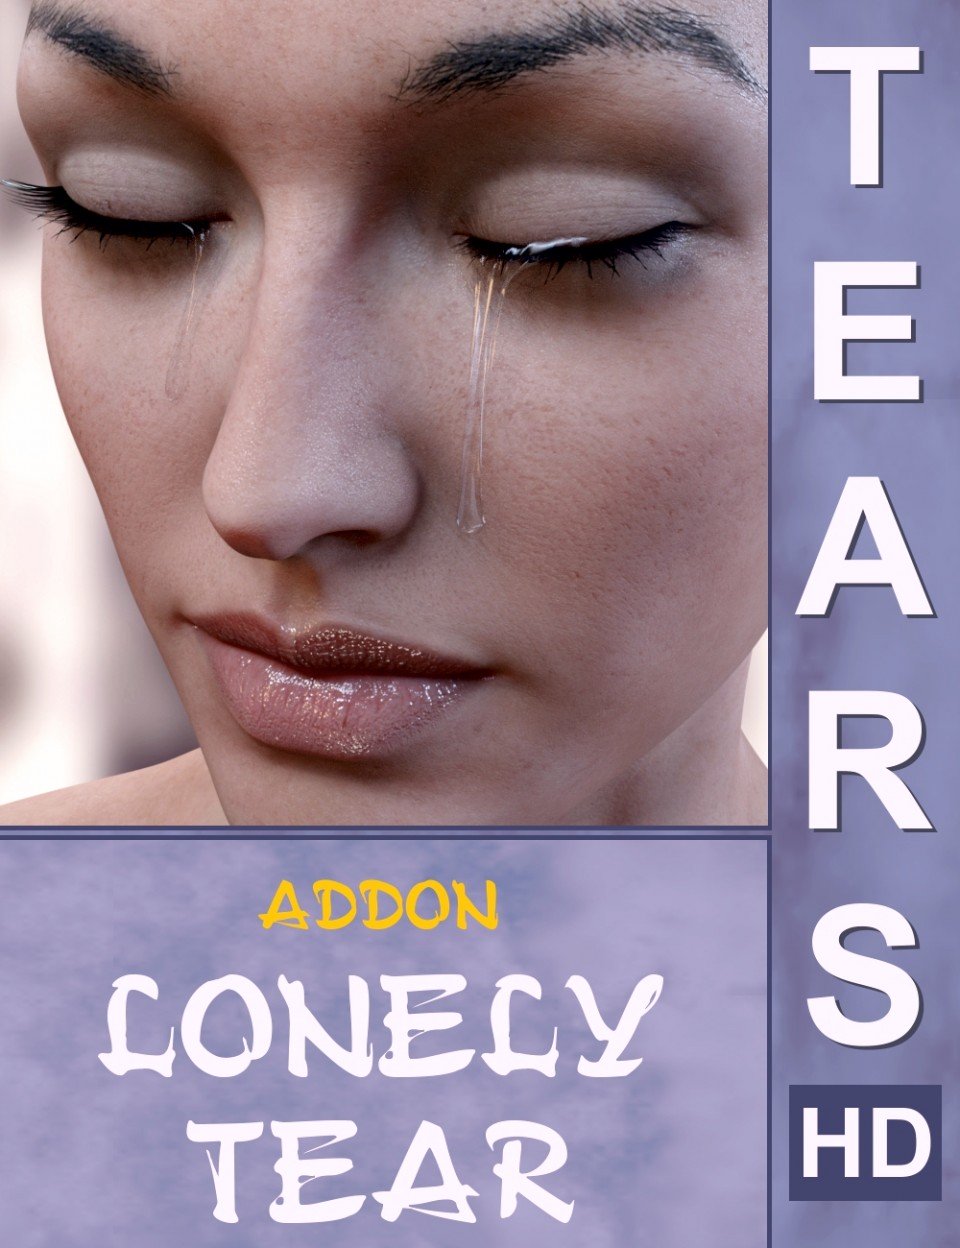 Tears HD Addon Lonely Tear_DAZ3D下载站